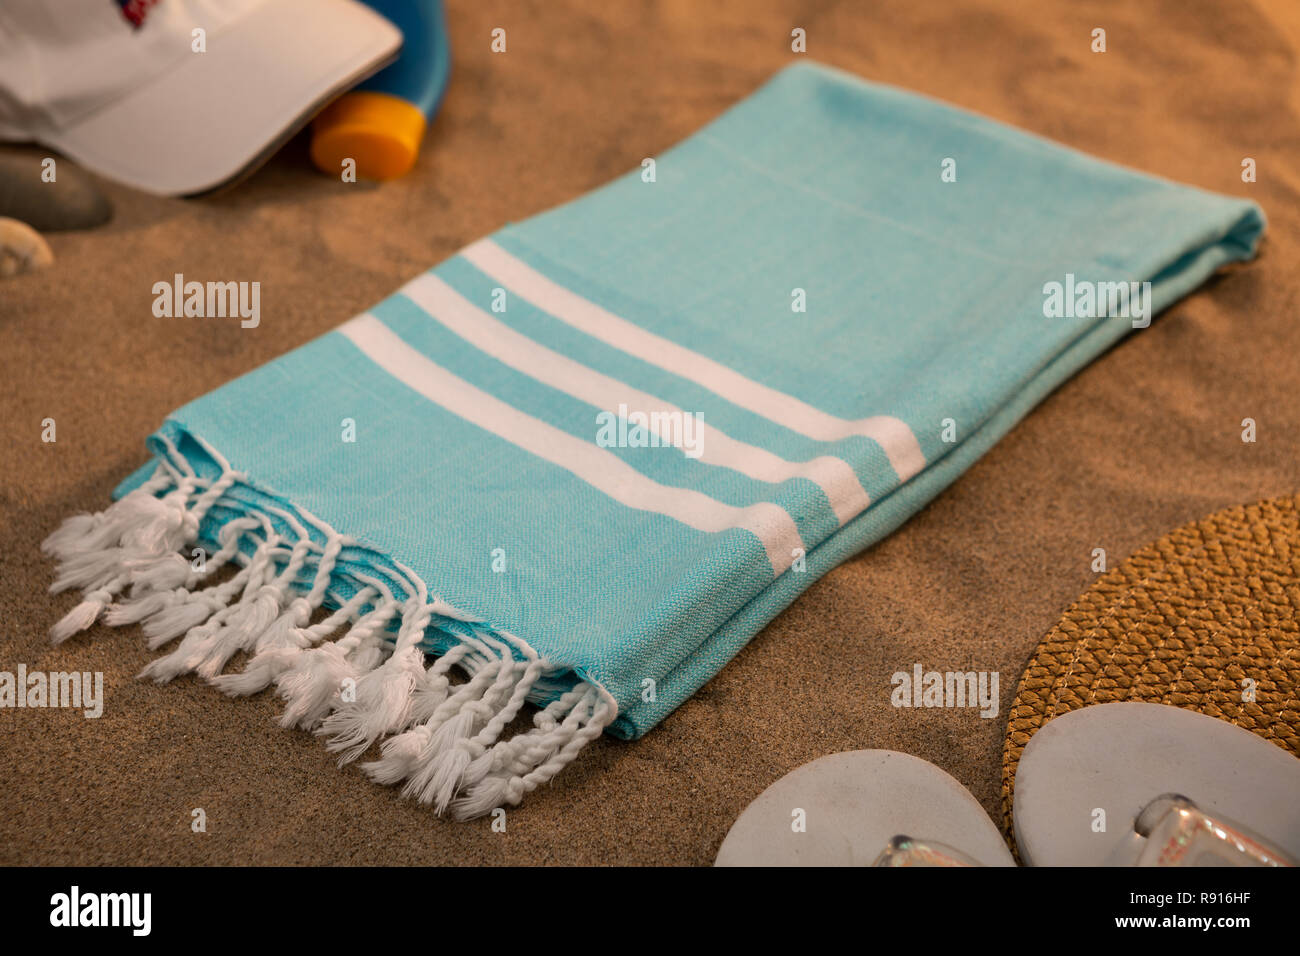 Intrecciato hammam turco asciugamani di cotone sulla spiaggia Foto Stock